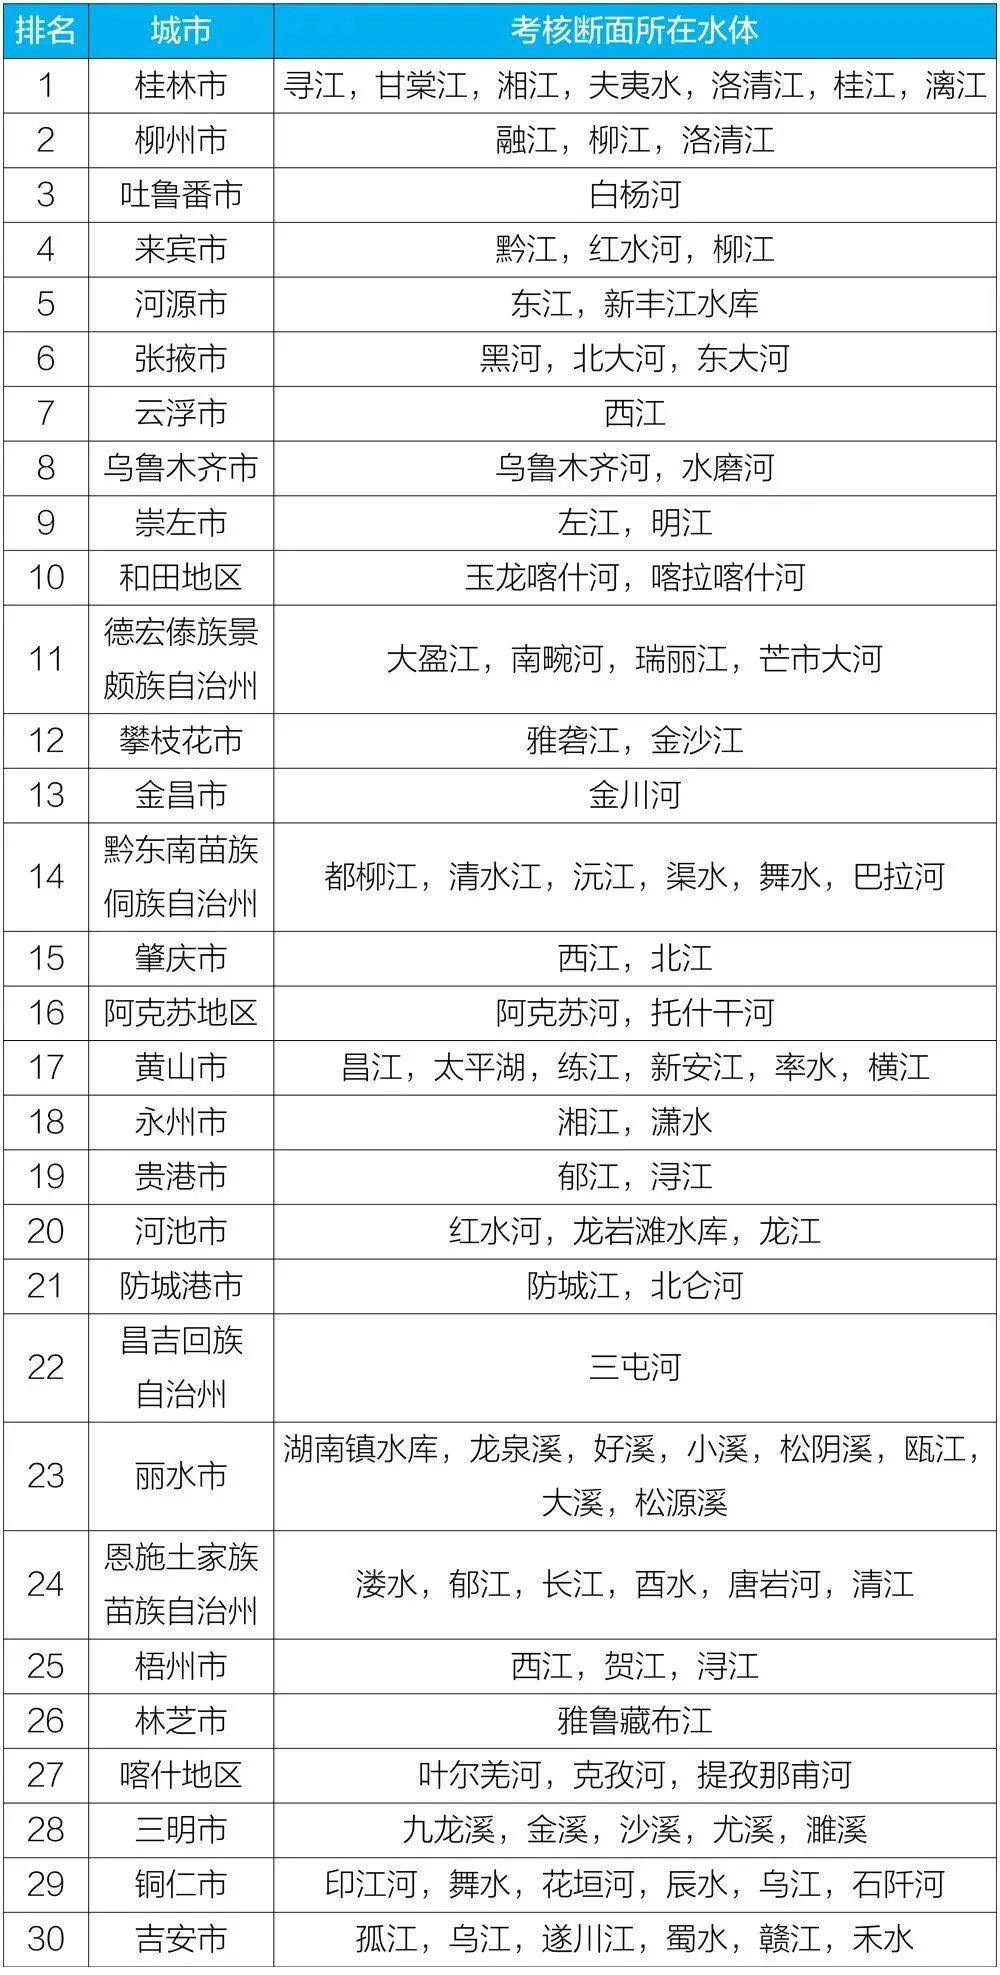 2020年桂林市小学排名_2020年桂林市穿山小学一年级新生招生简章(2)